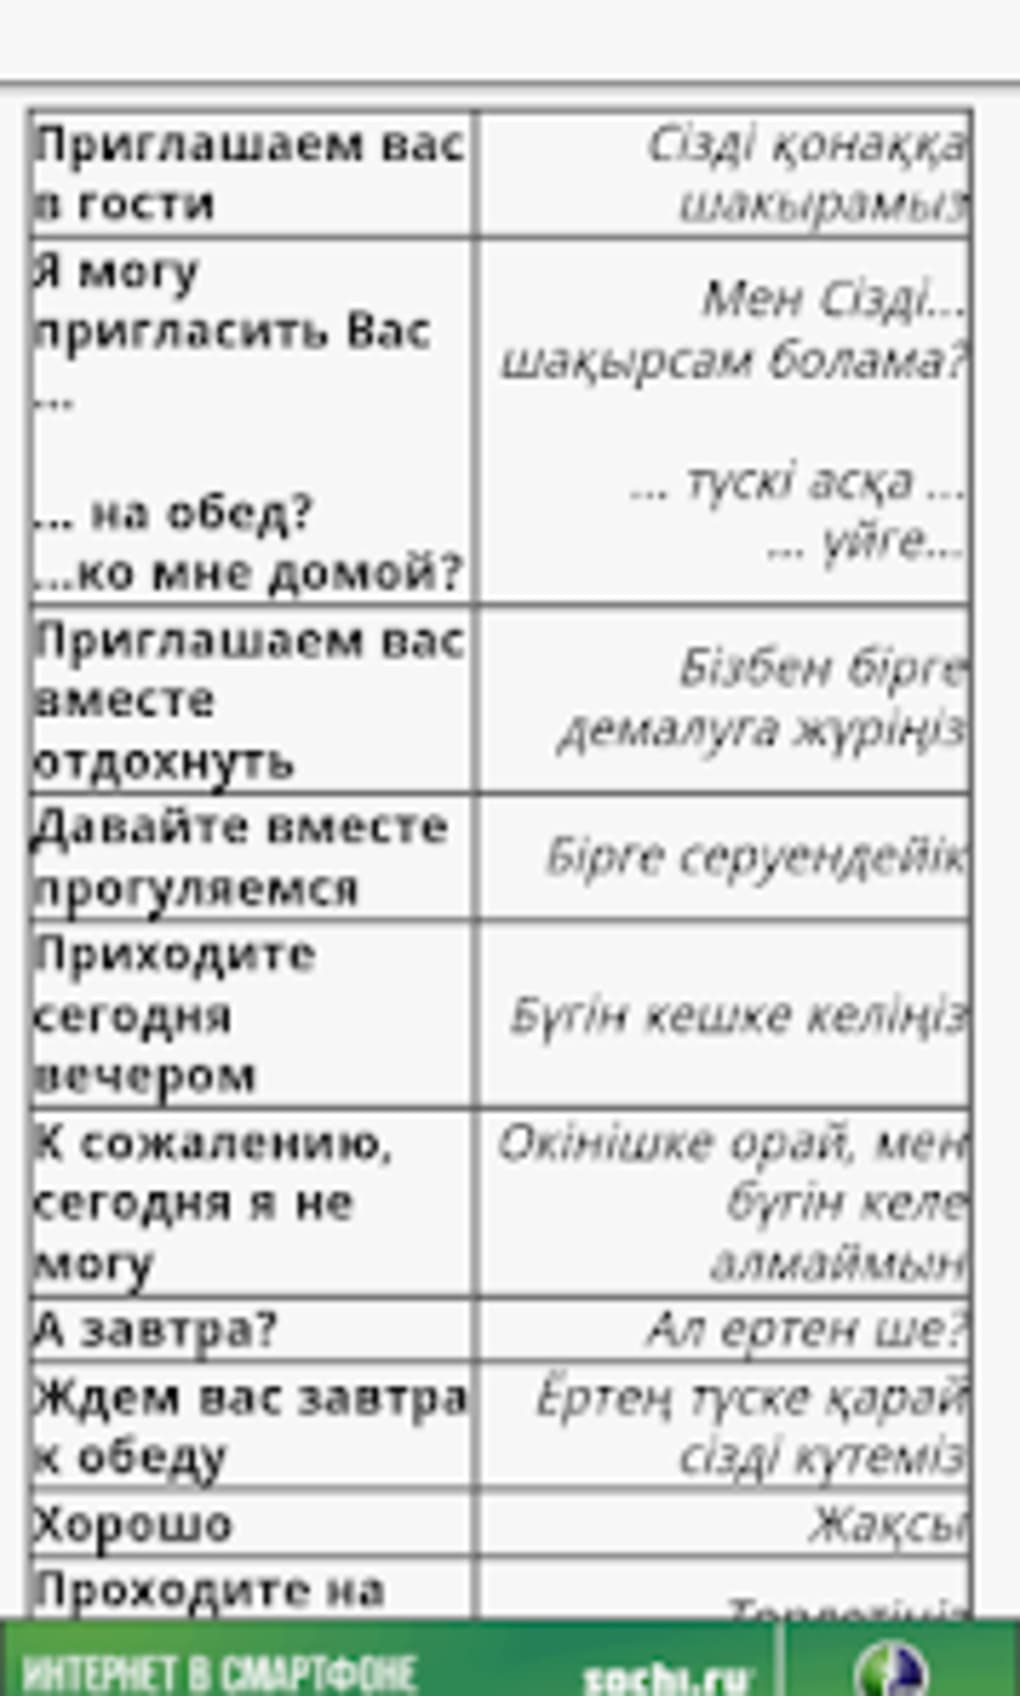 члены перевод на казахский язык фото 8